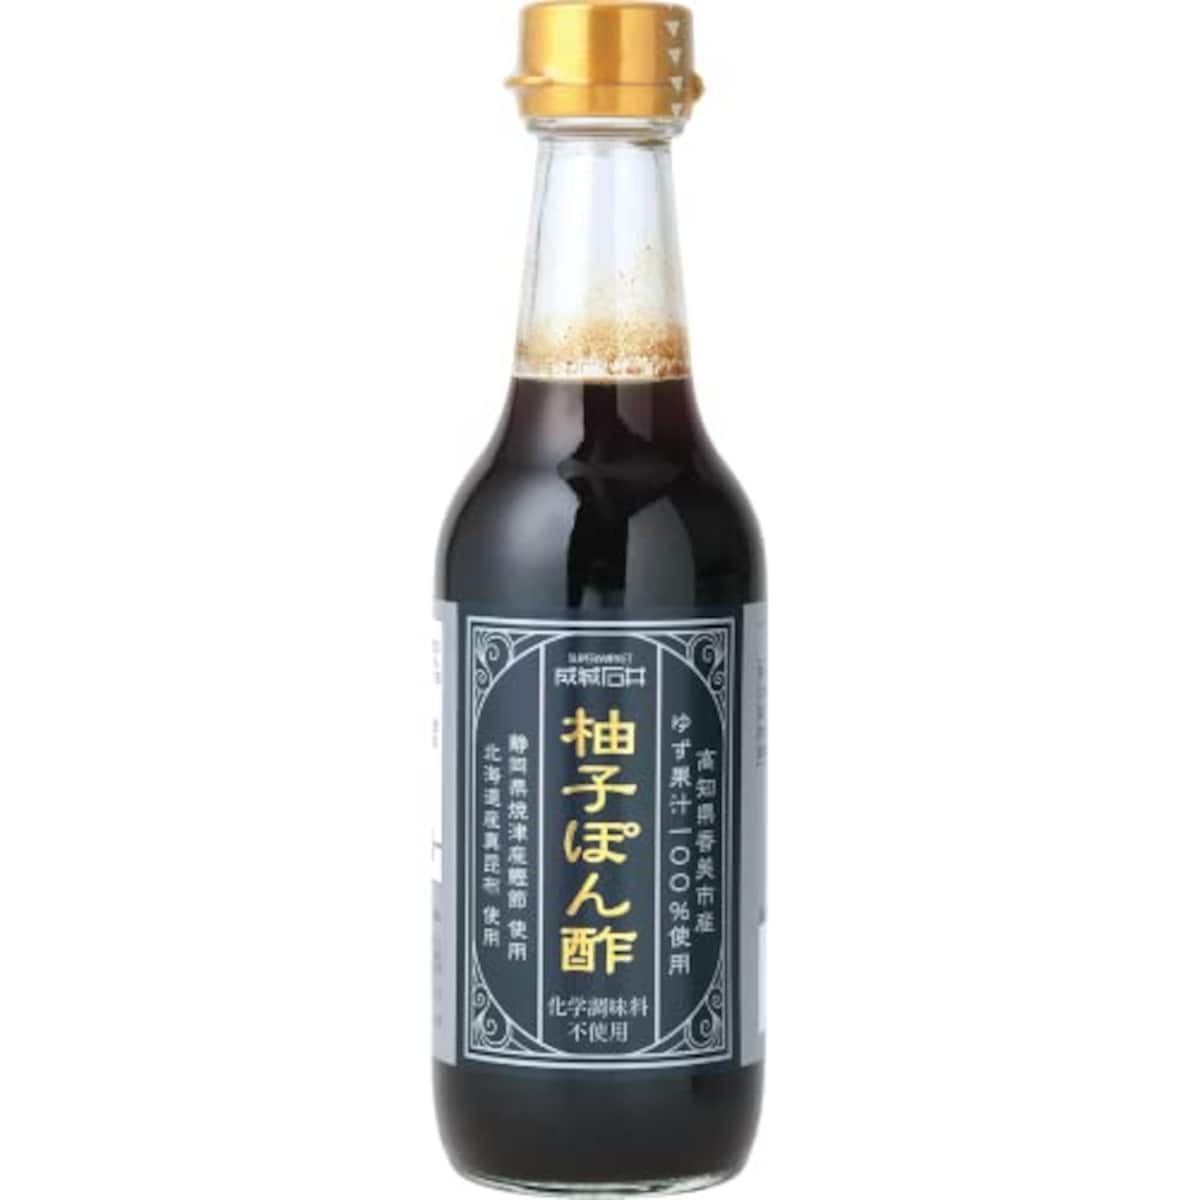 高知県香美市産ゆず果汁100%使用ゆずぽん酢